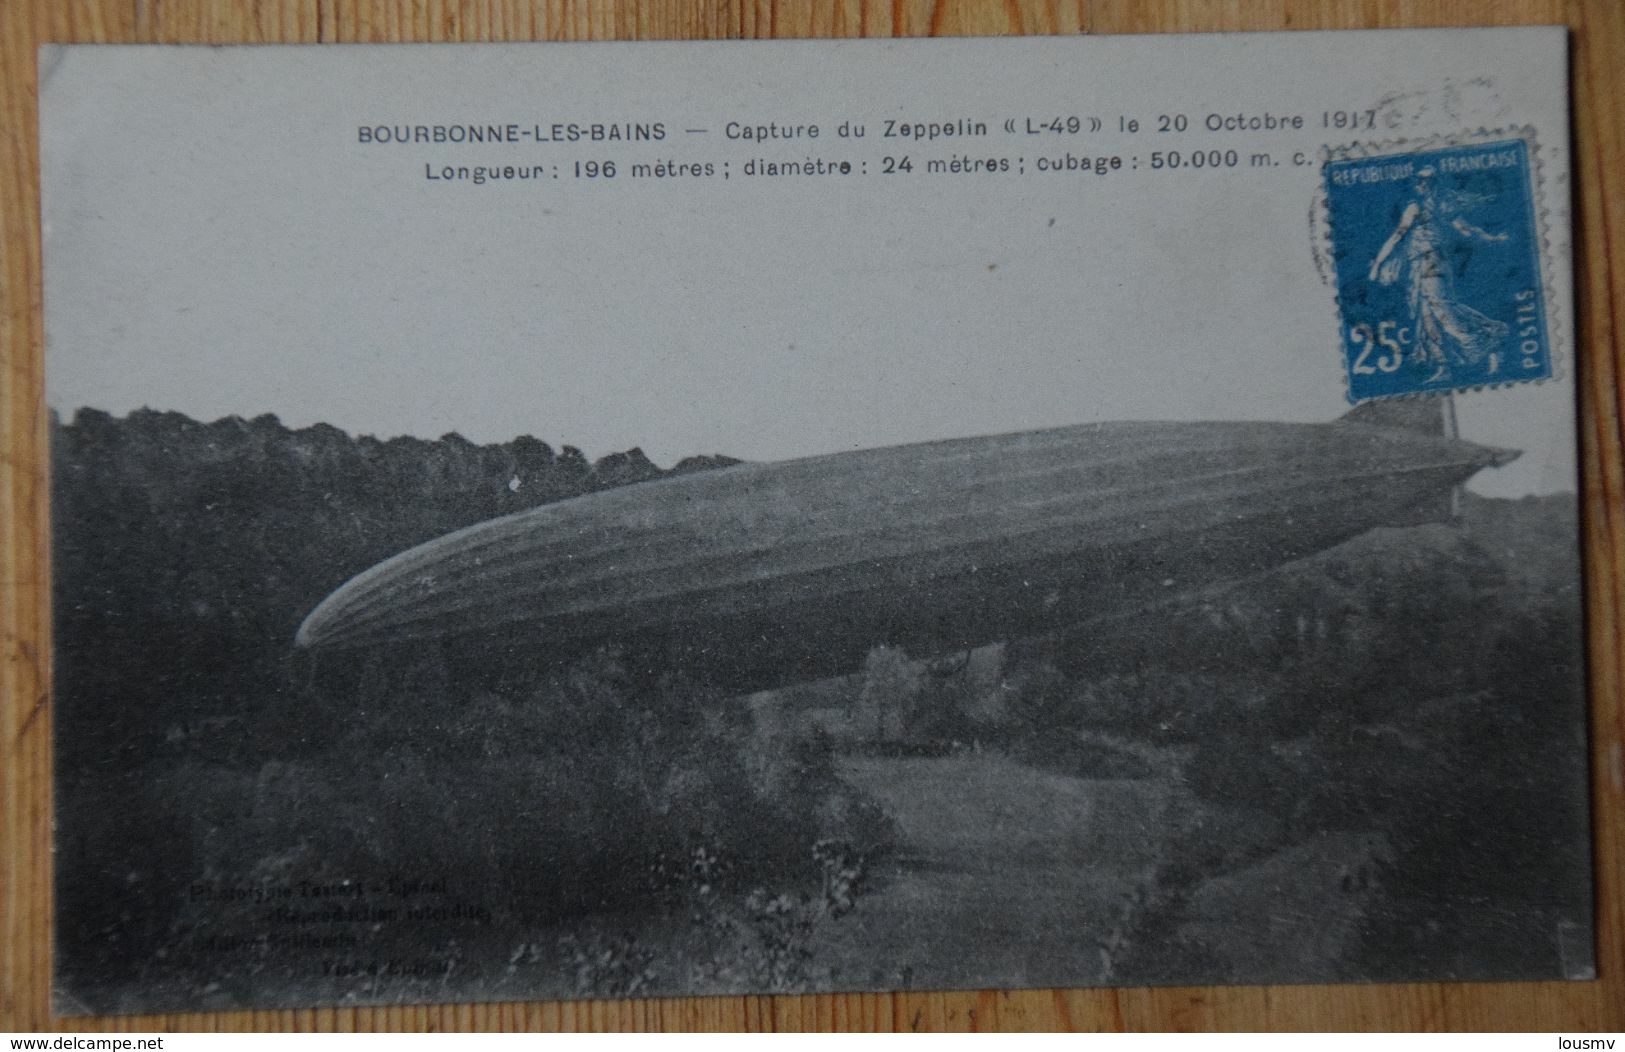 52 : Bourbonne-les-bains - Capture Du Zeppelin L-49 Le 20 Octobre 1917 - Guerre - Militaria - (n°18518) - Bourbonne Les Bains